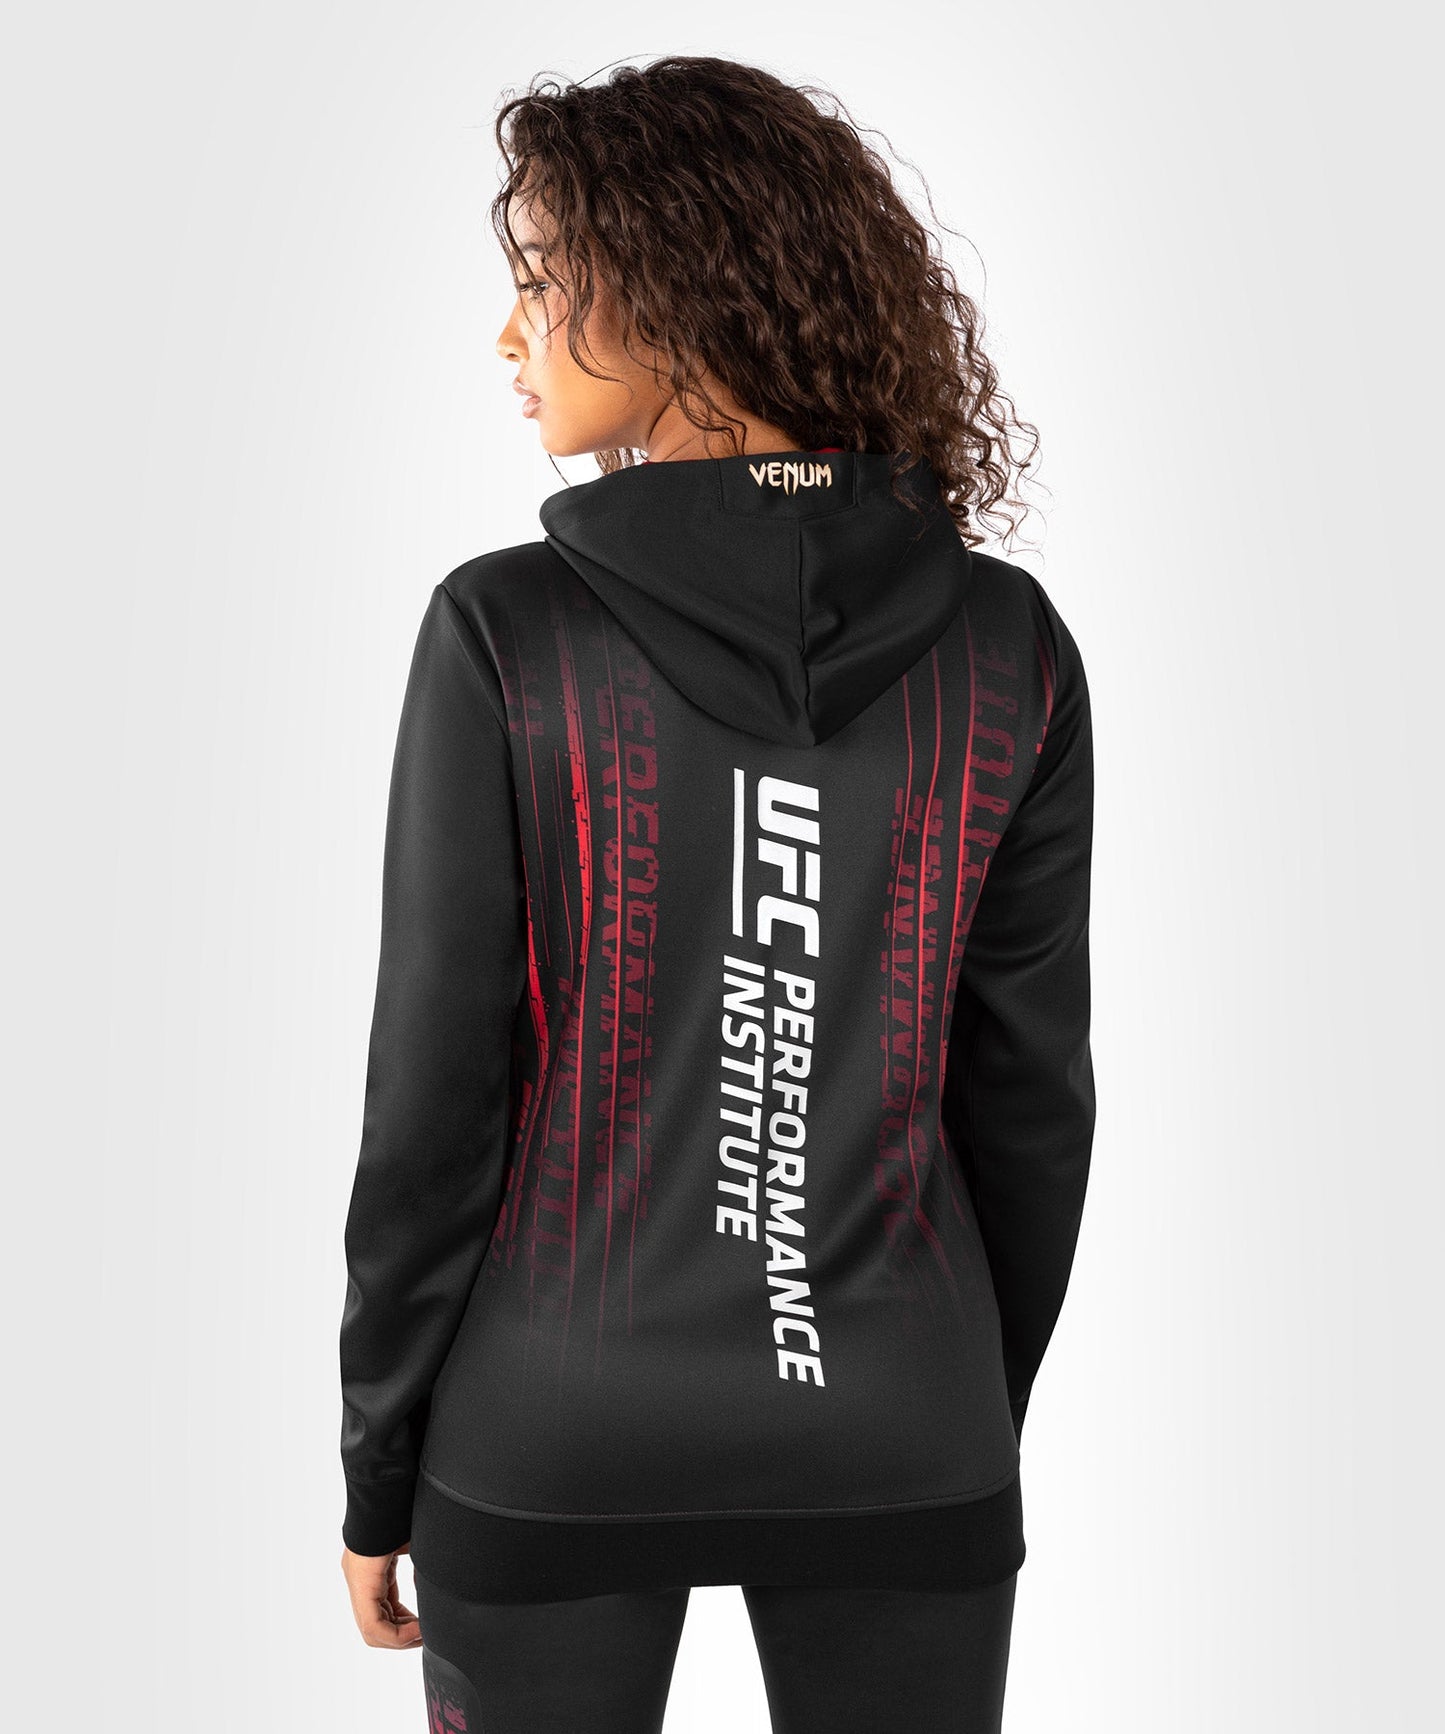 UFC Venum Performance Institute 2.0 Zip Hoodie für Frauen - Schwarz/Rot